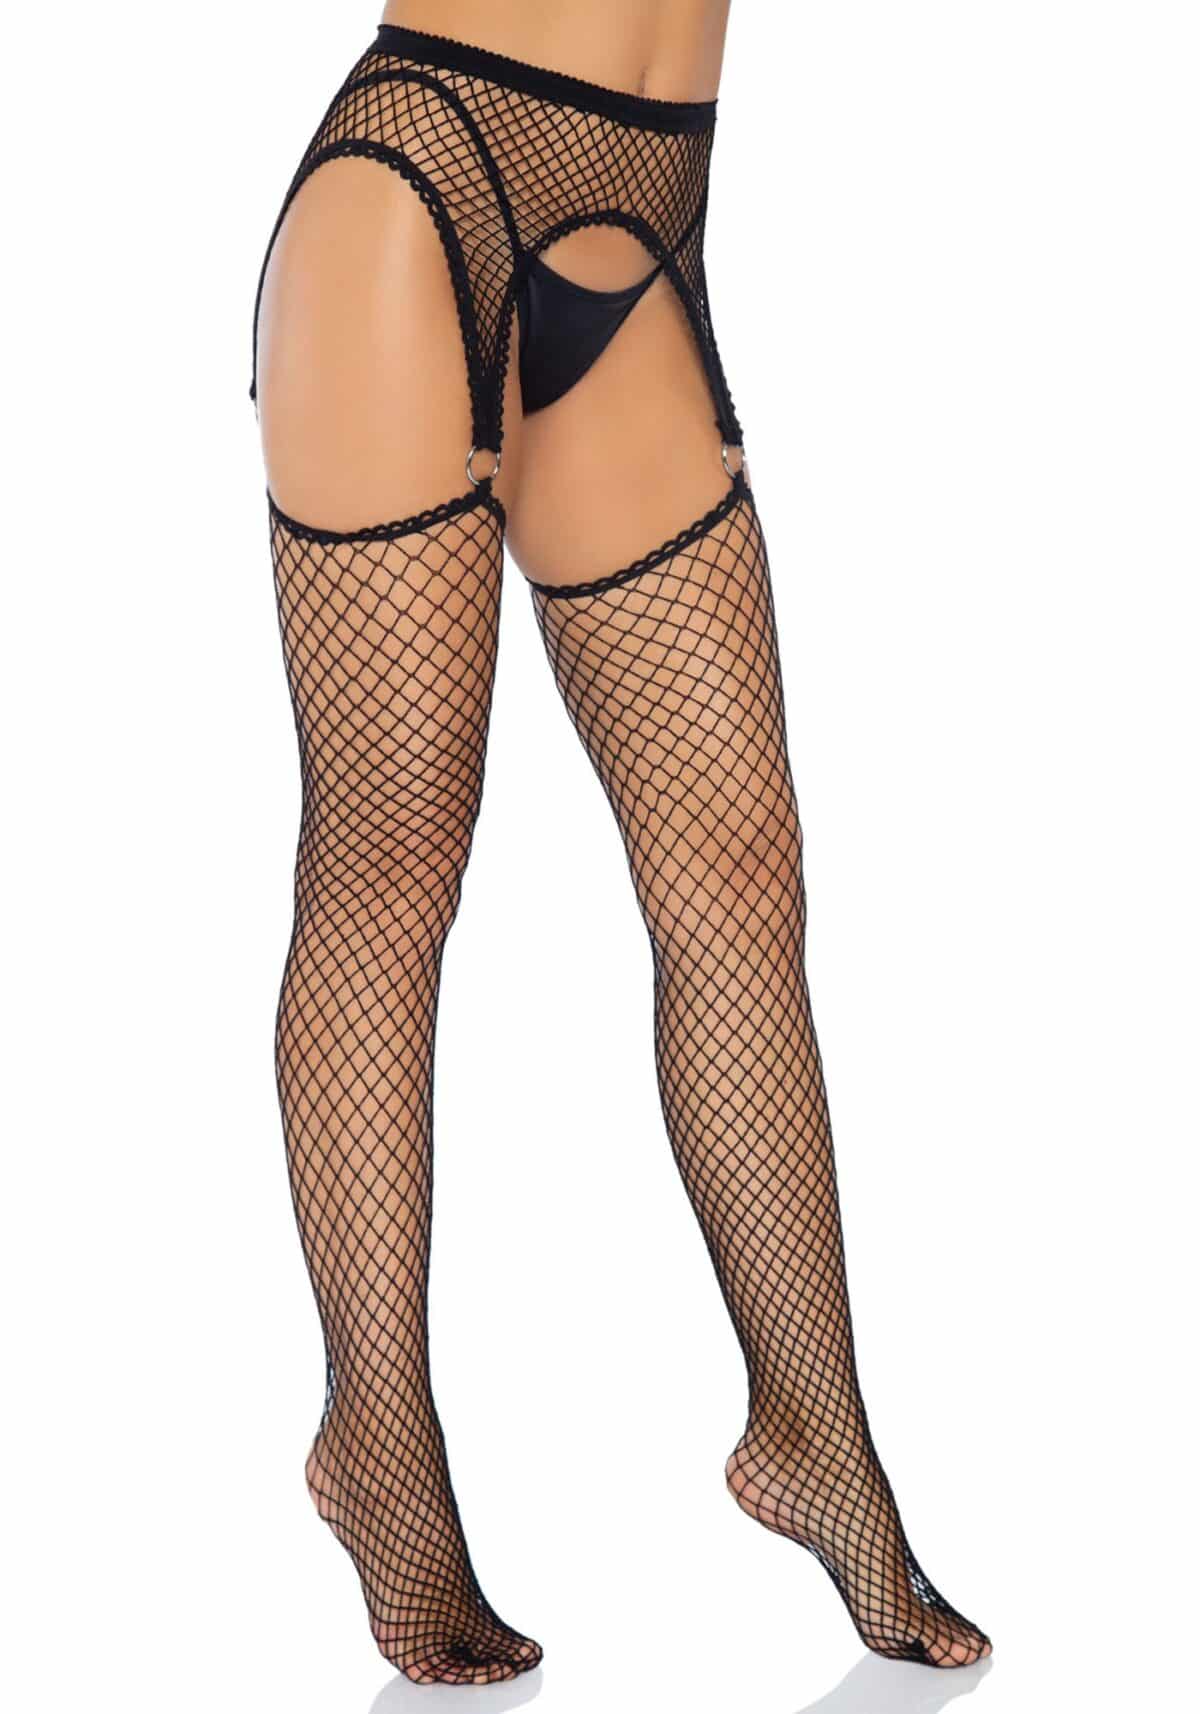 Net garterbelt stockings καλσόν